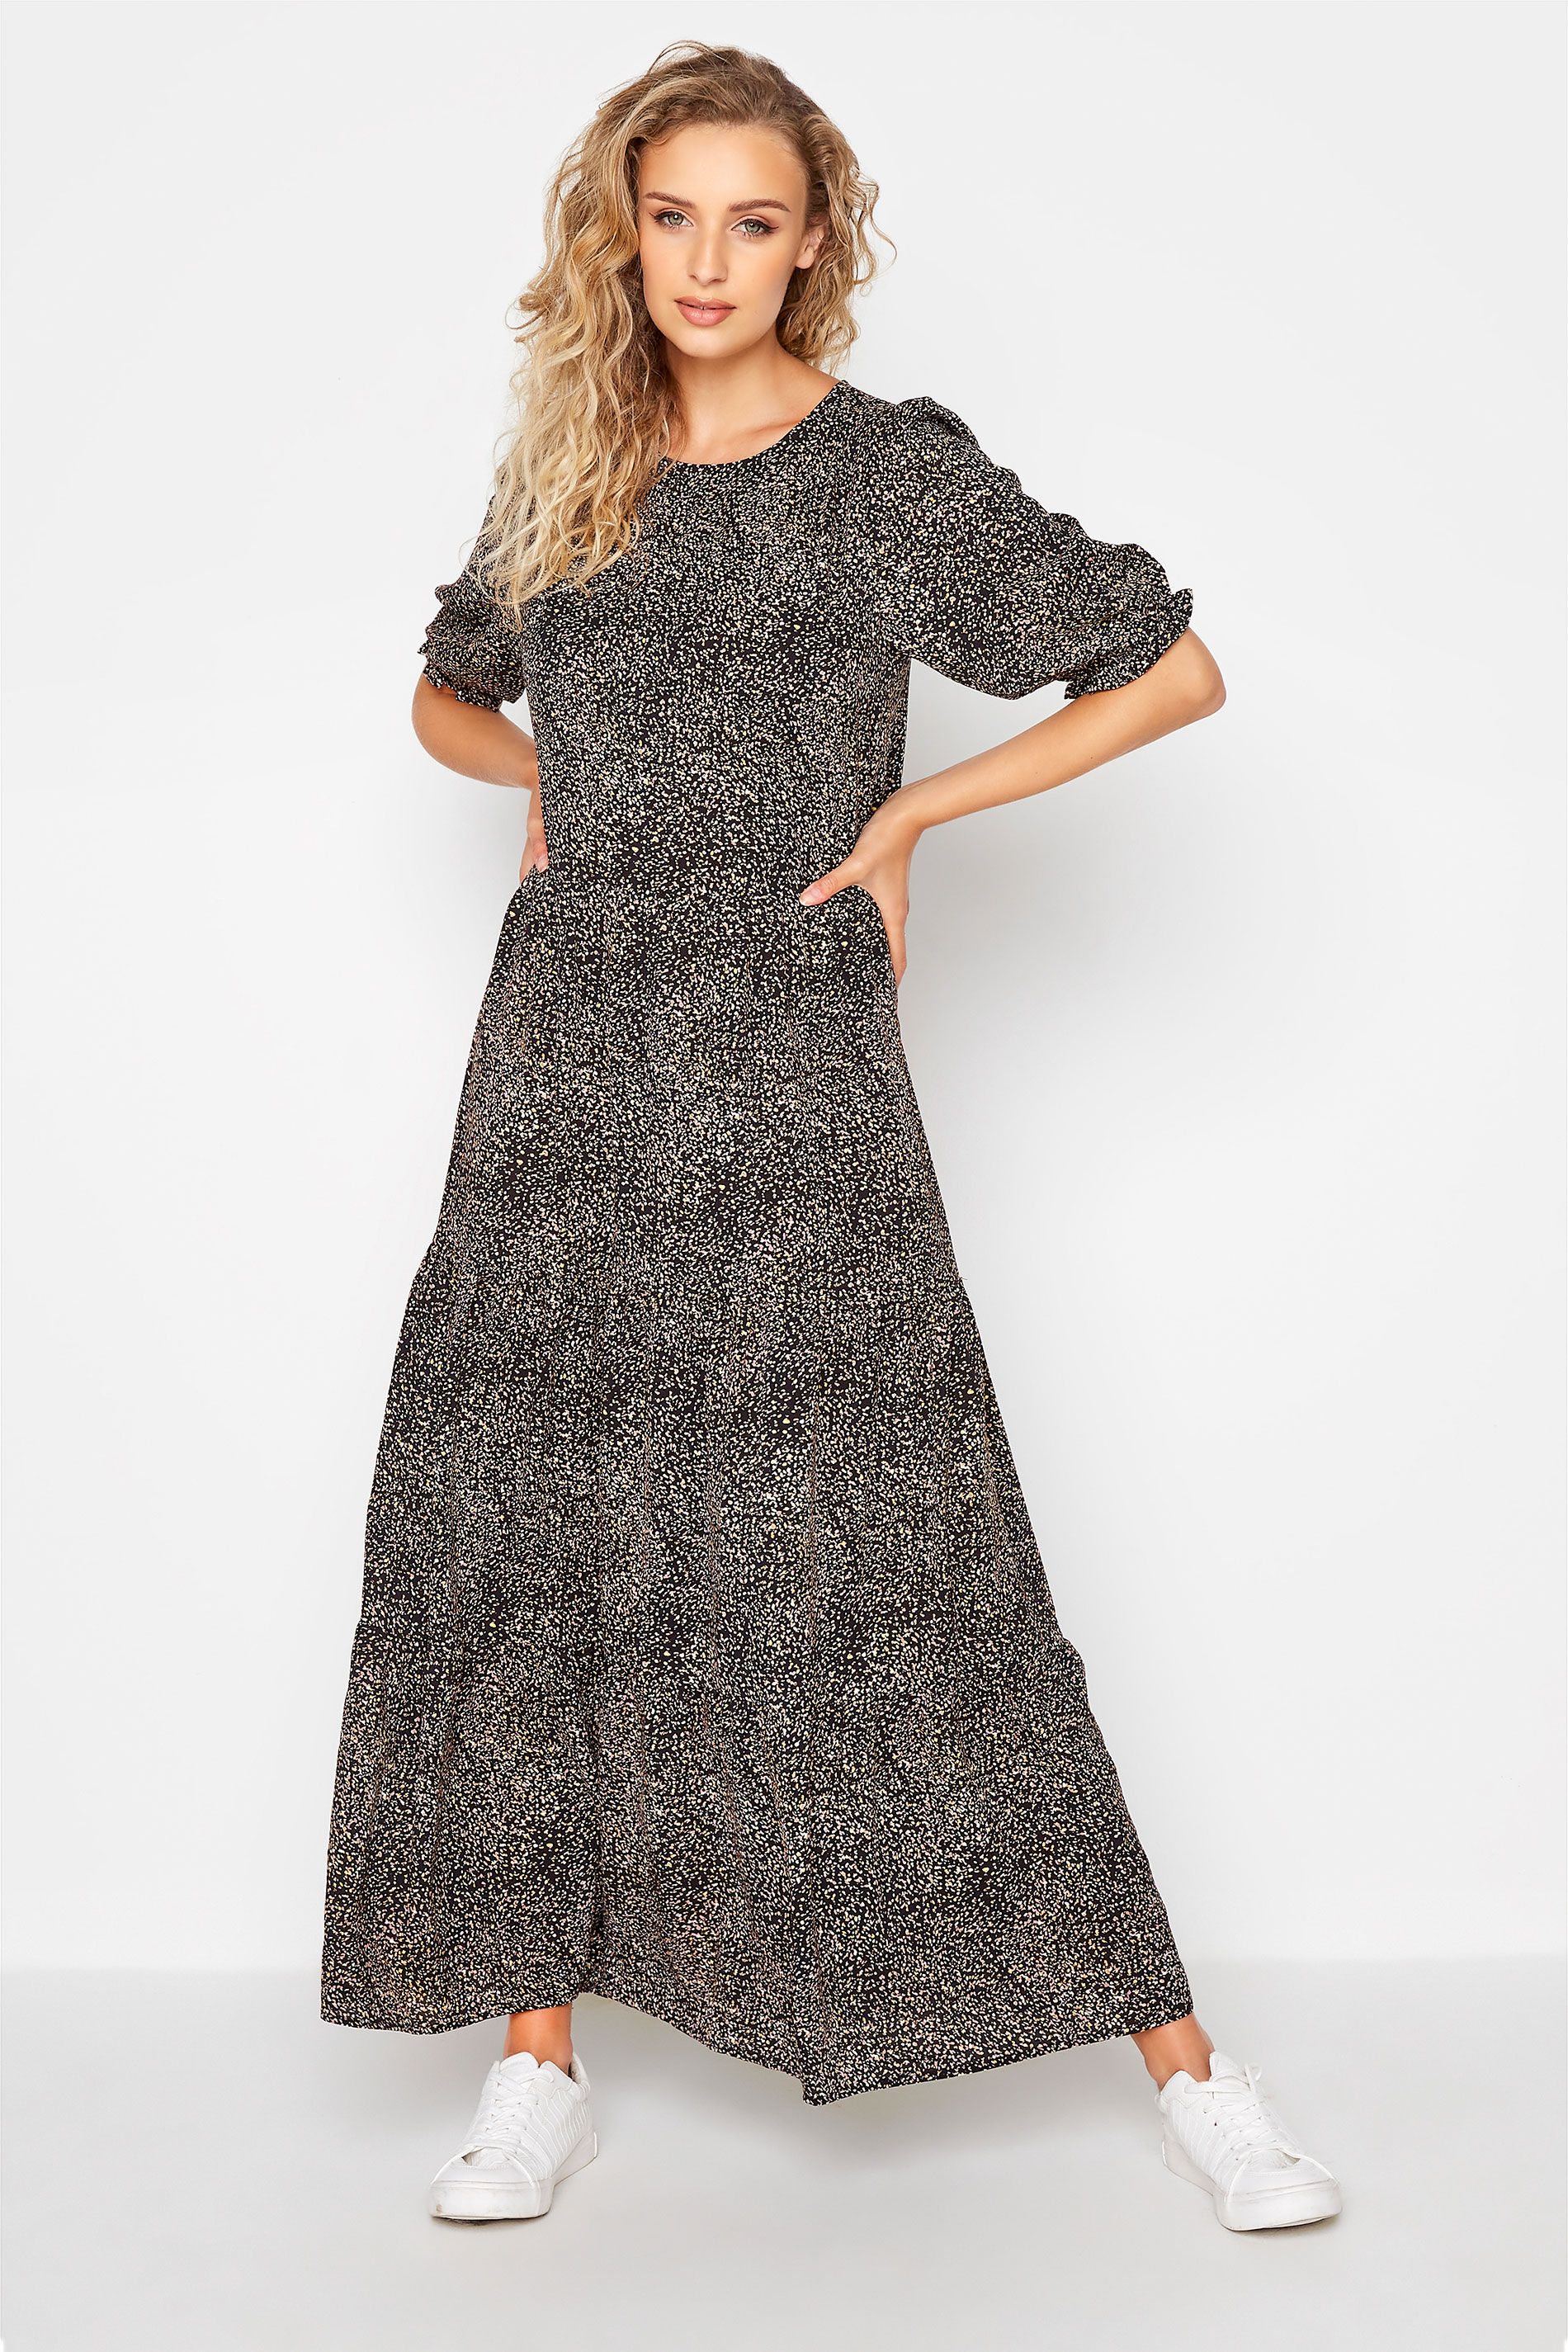 LTS Tall Black Speckled Tiered Midaxi Dress_A.jpg